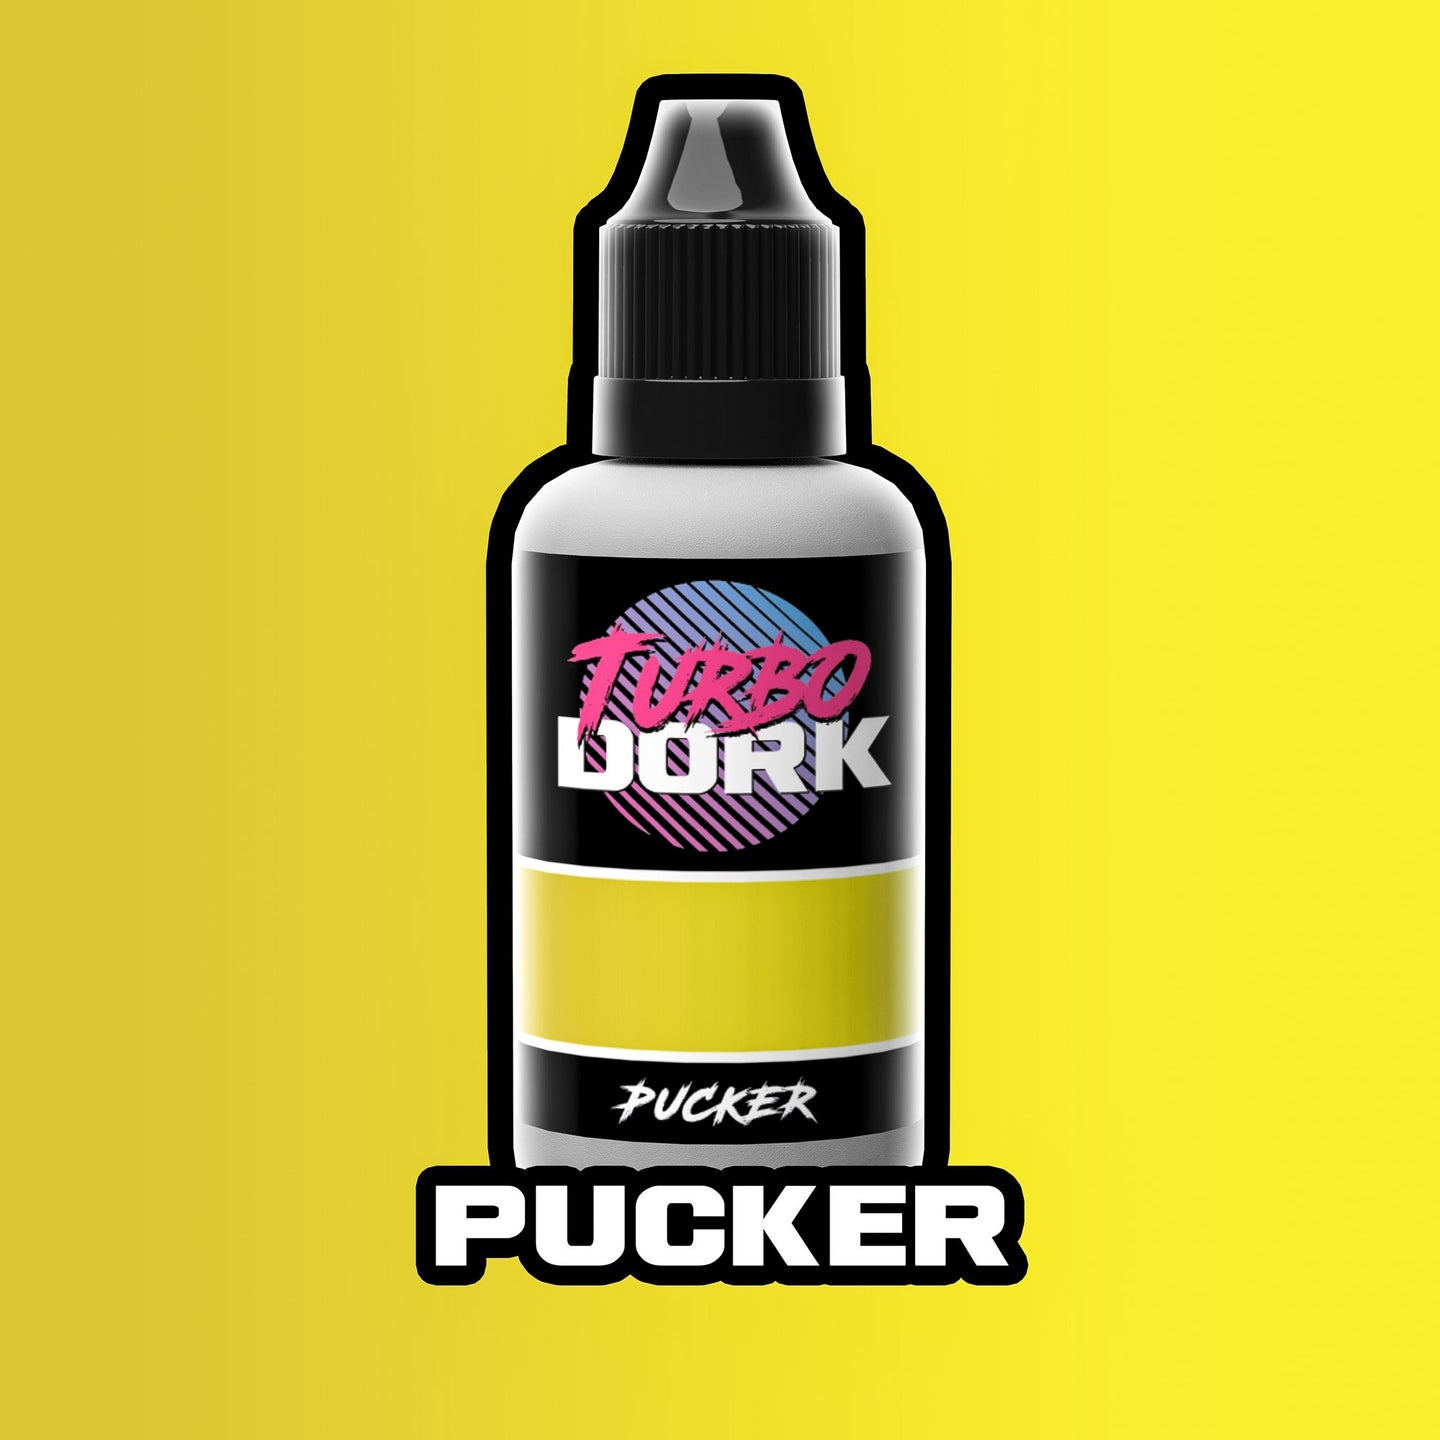 Pucker Metallic Acrylic Paint 20ml Bottle - Linebreakers